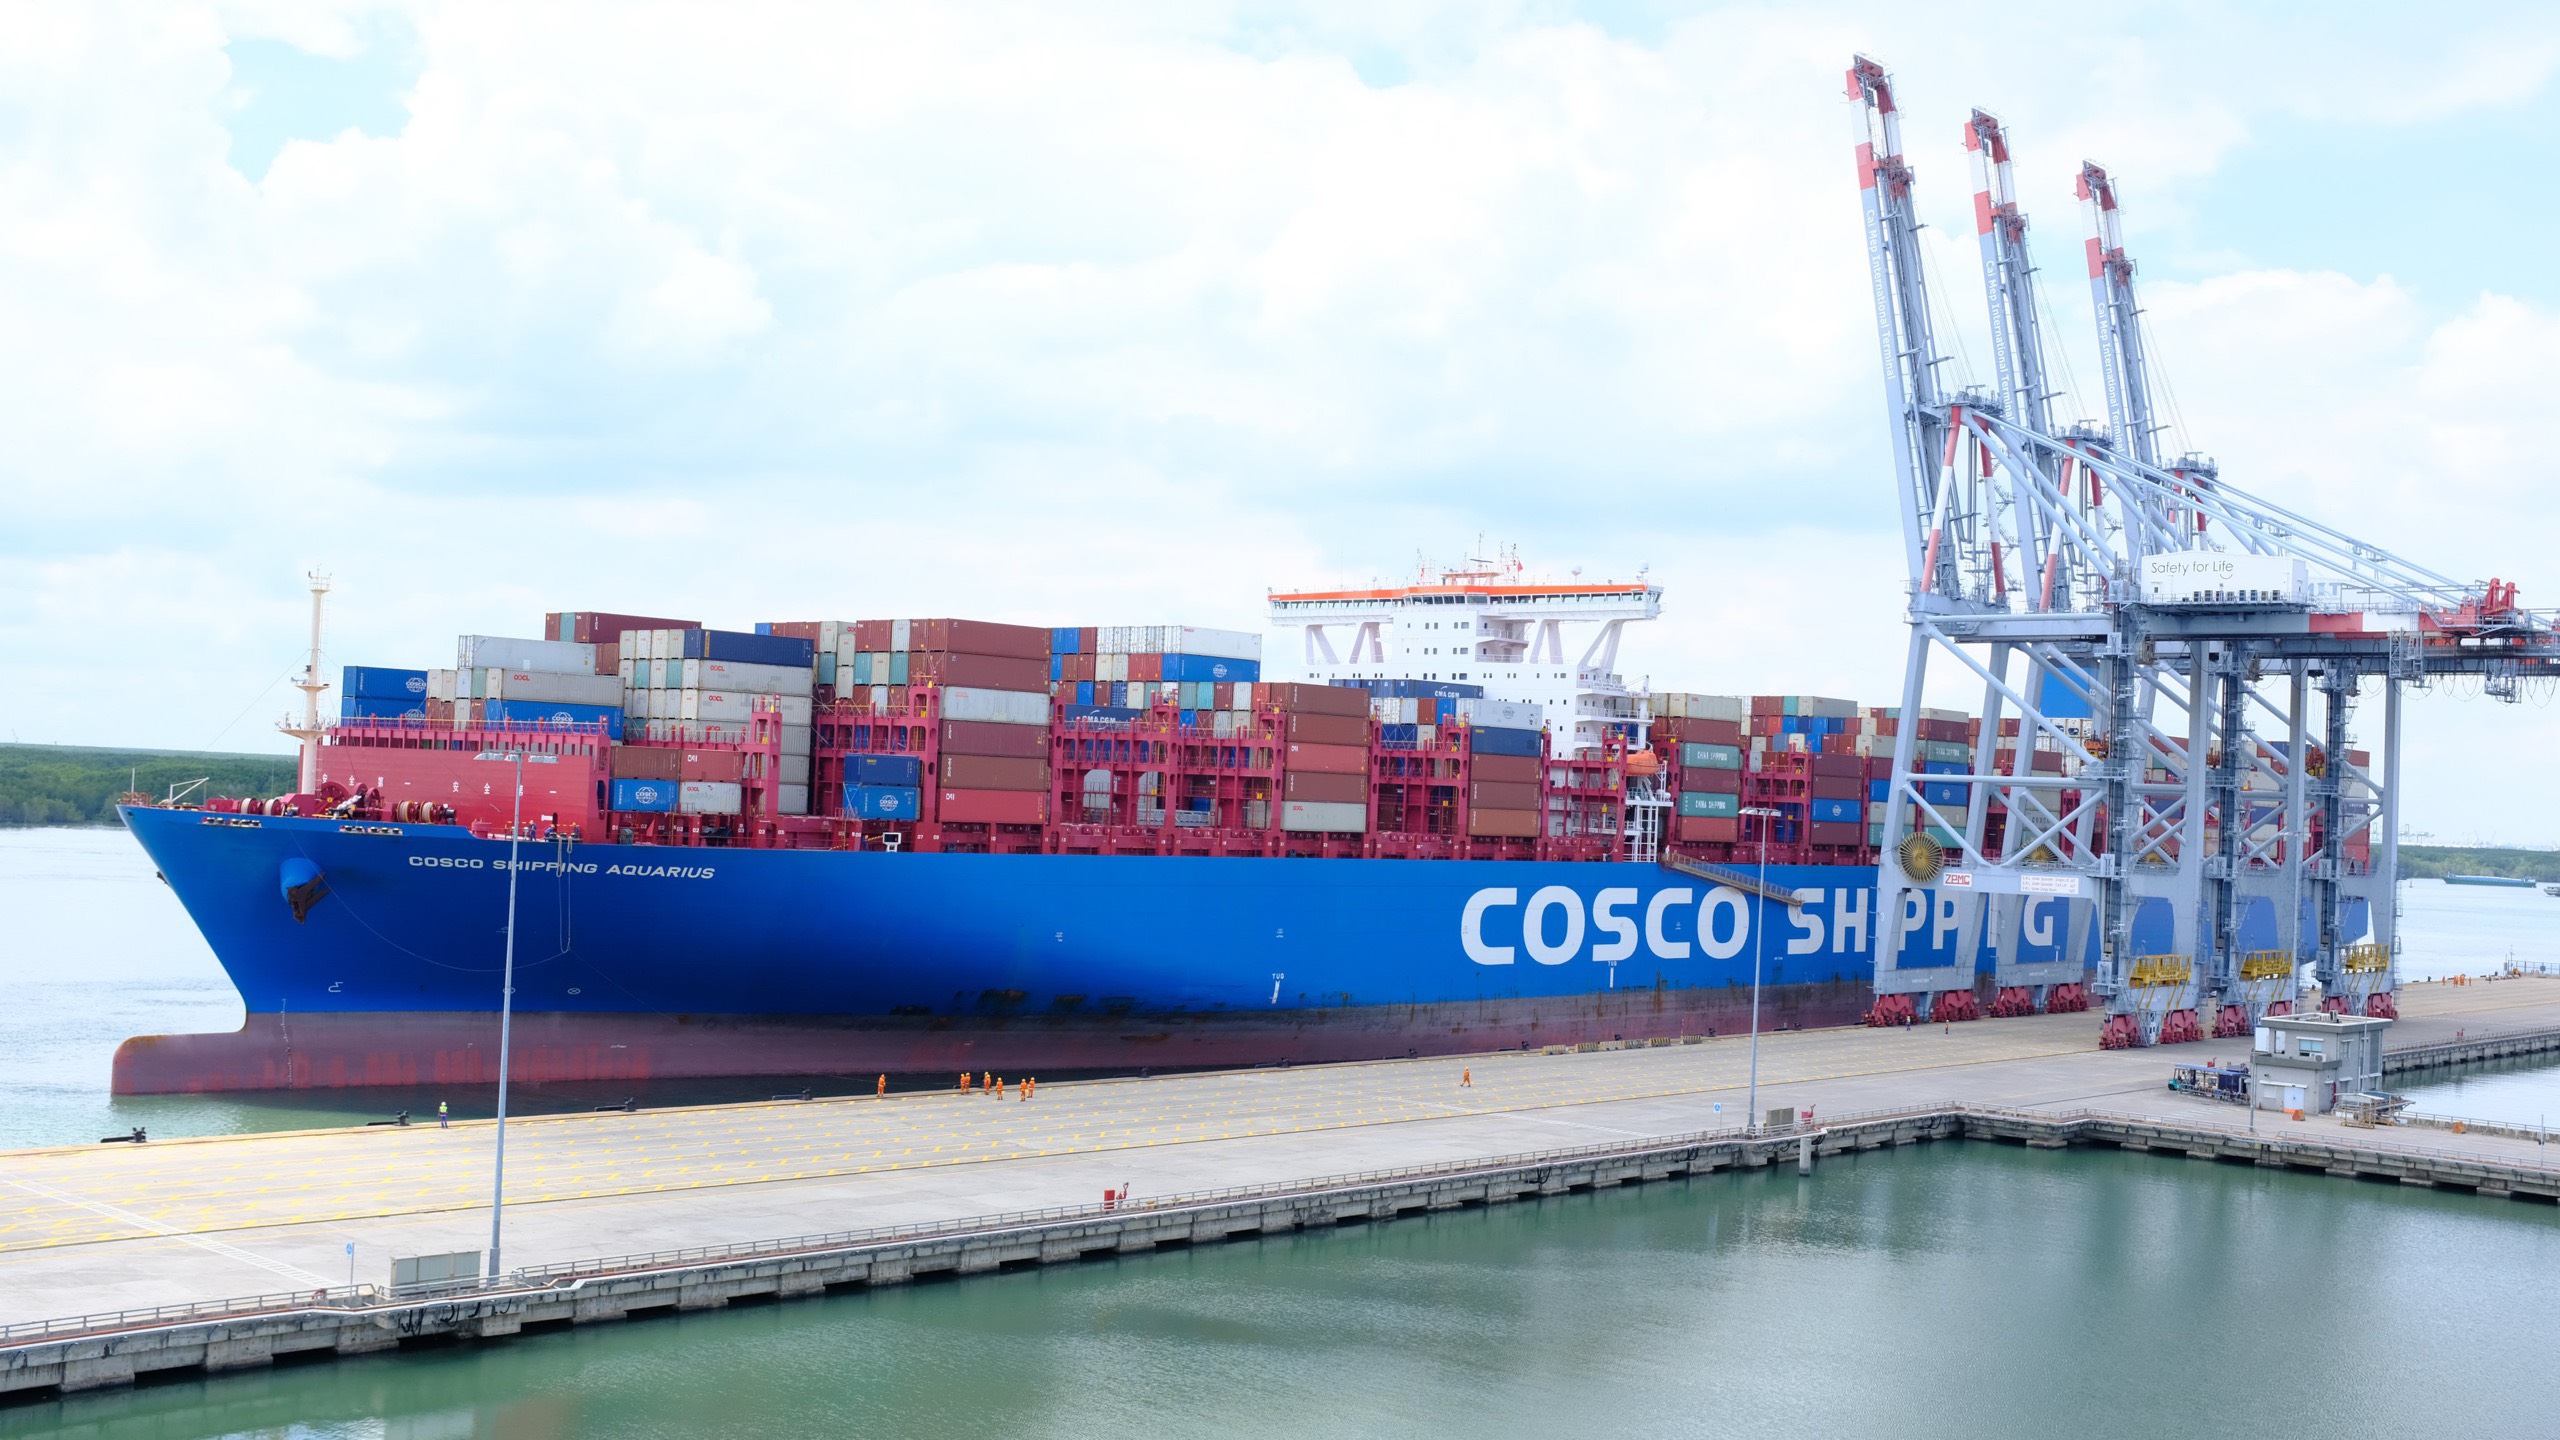 Tàu container có tổng dung tích từ 80.000 GT trở lên đến CM-TV sẽ được ưu đãi phí bảo đảm hàng hải, phí trọng tải tàu, thuyền đến hết năm 2023.